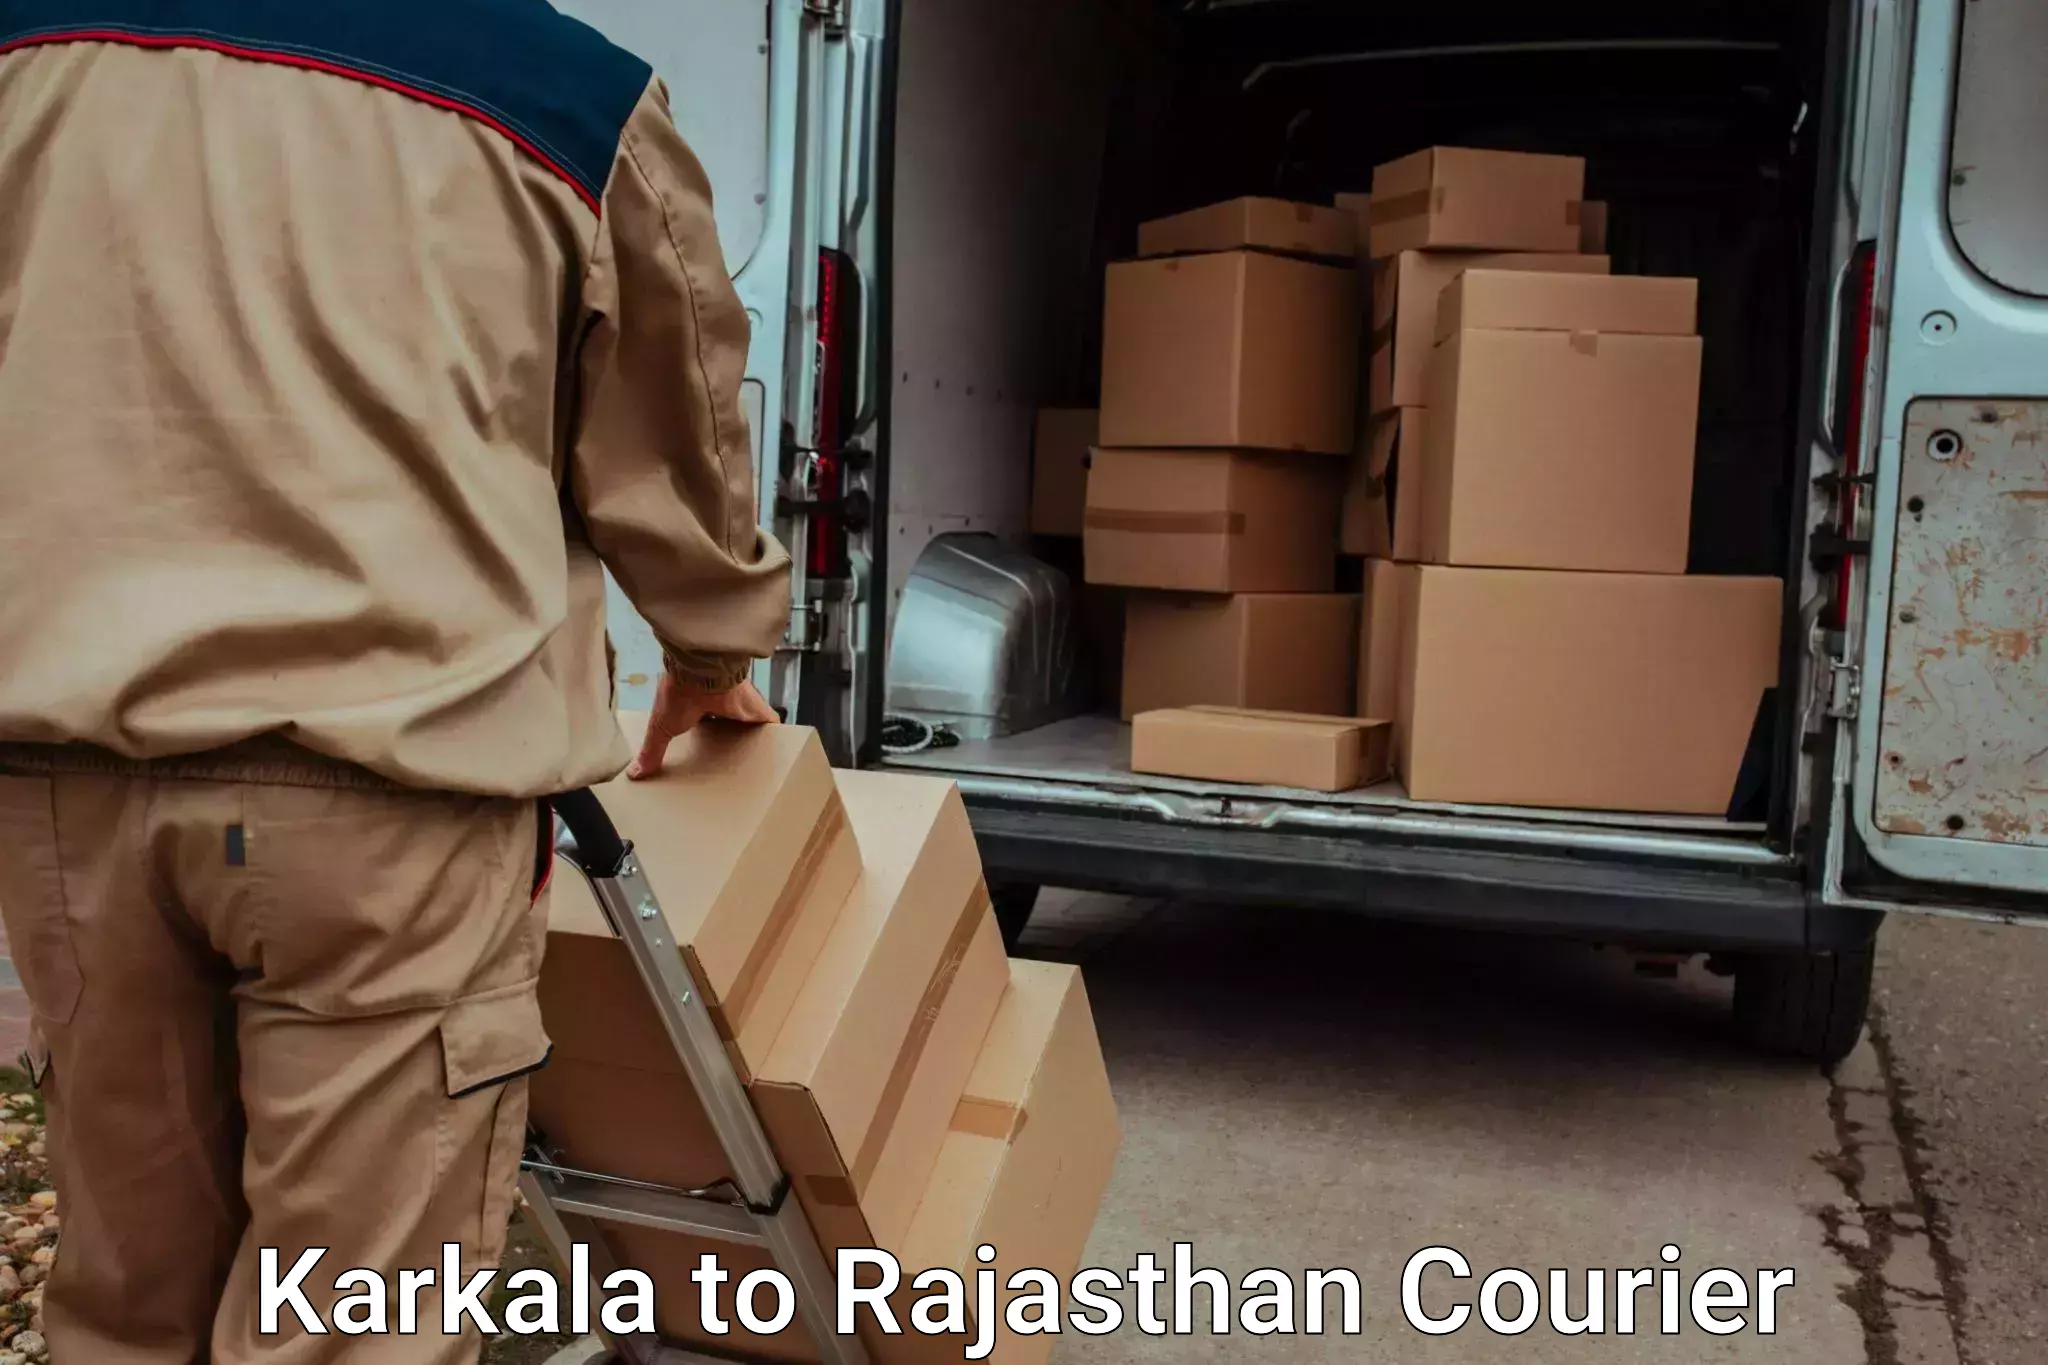 Baggage shipping service Karkala to Dholpur